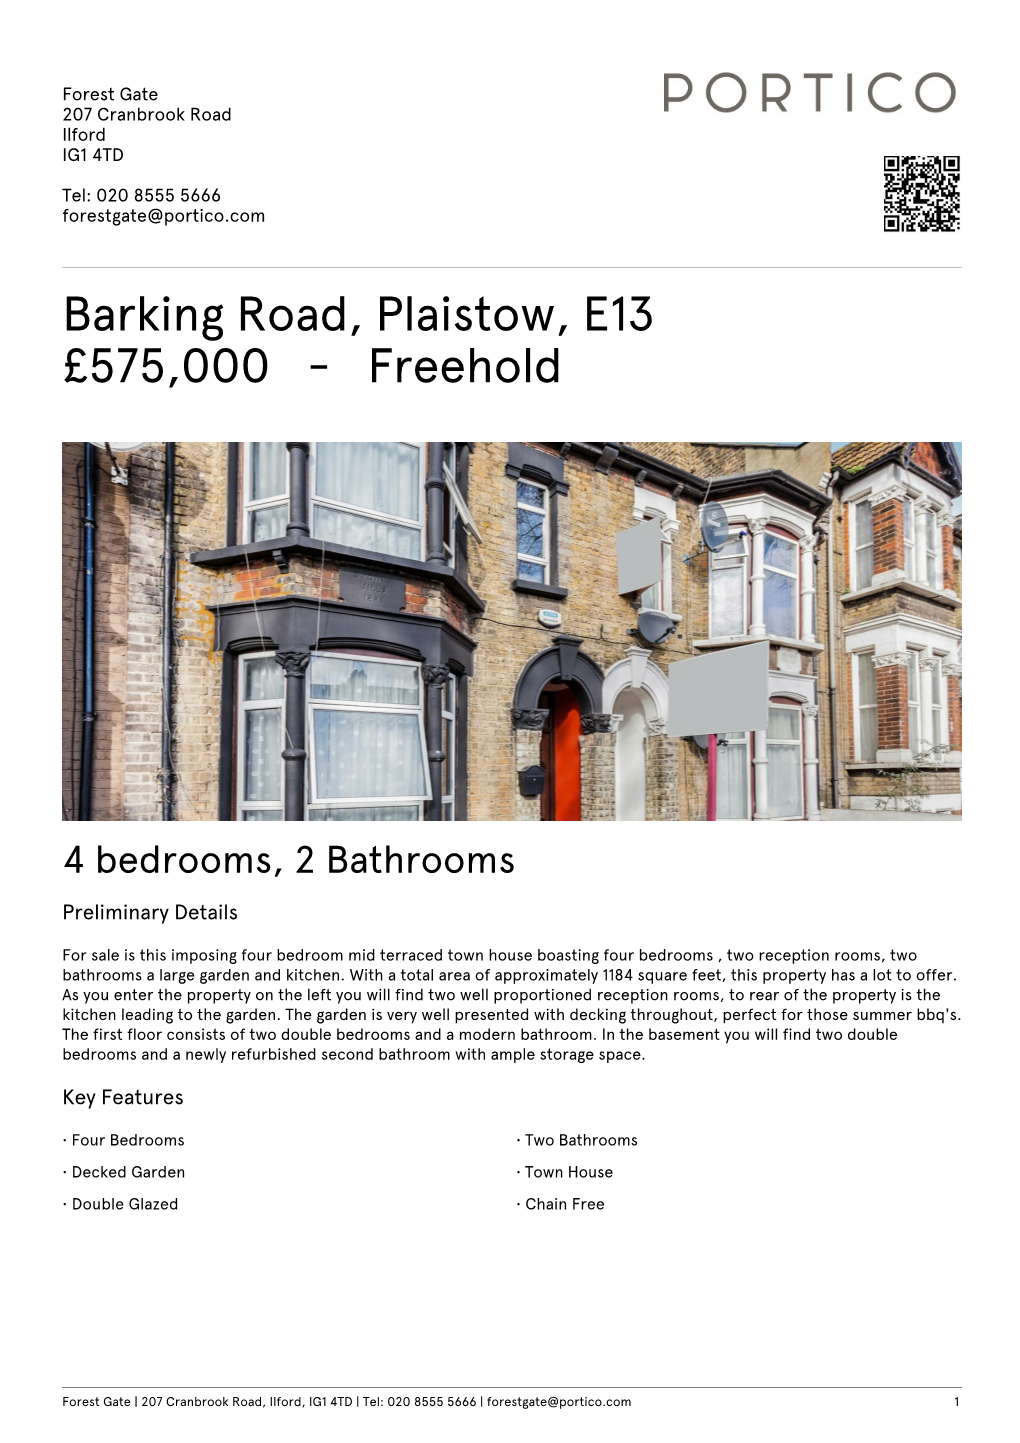 Barking Road, Plaistow, E13 £575000